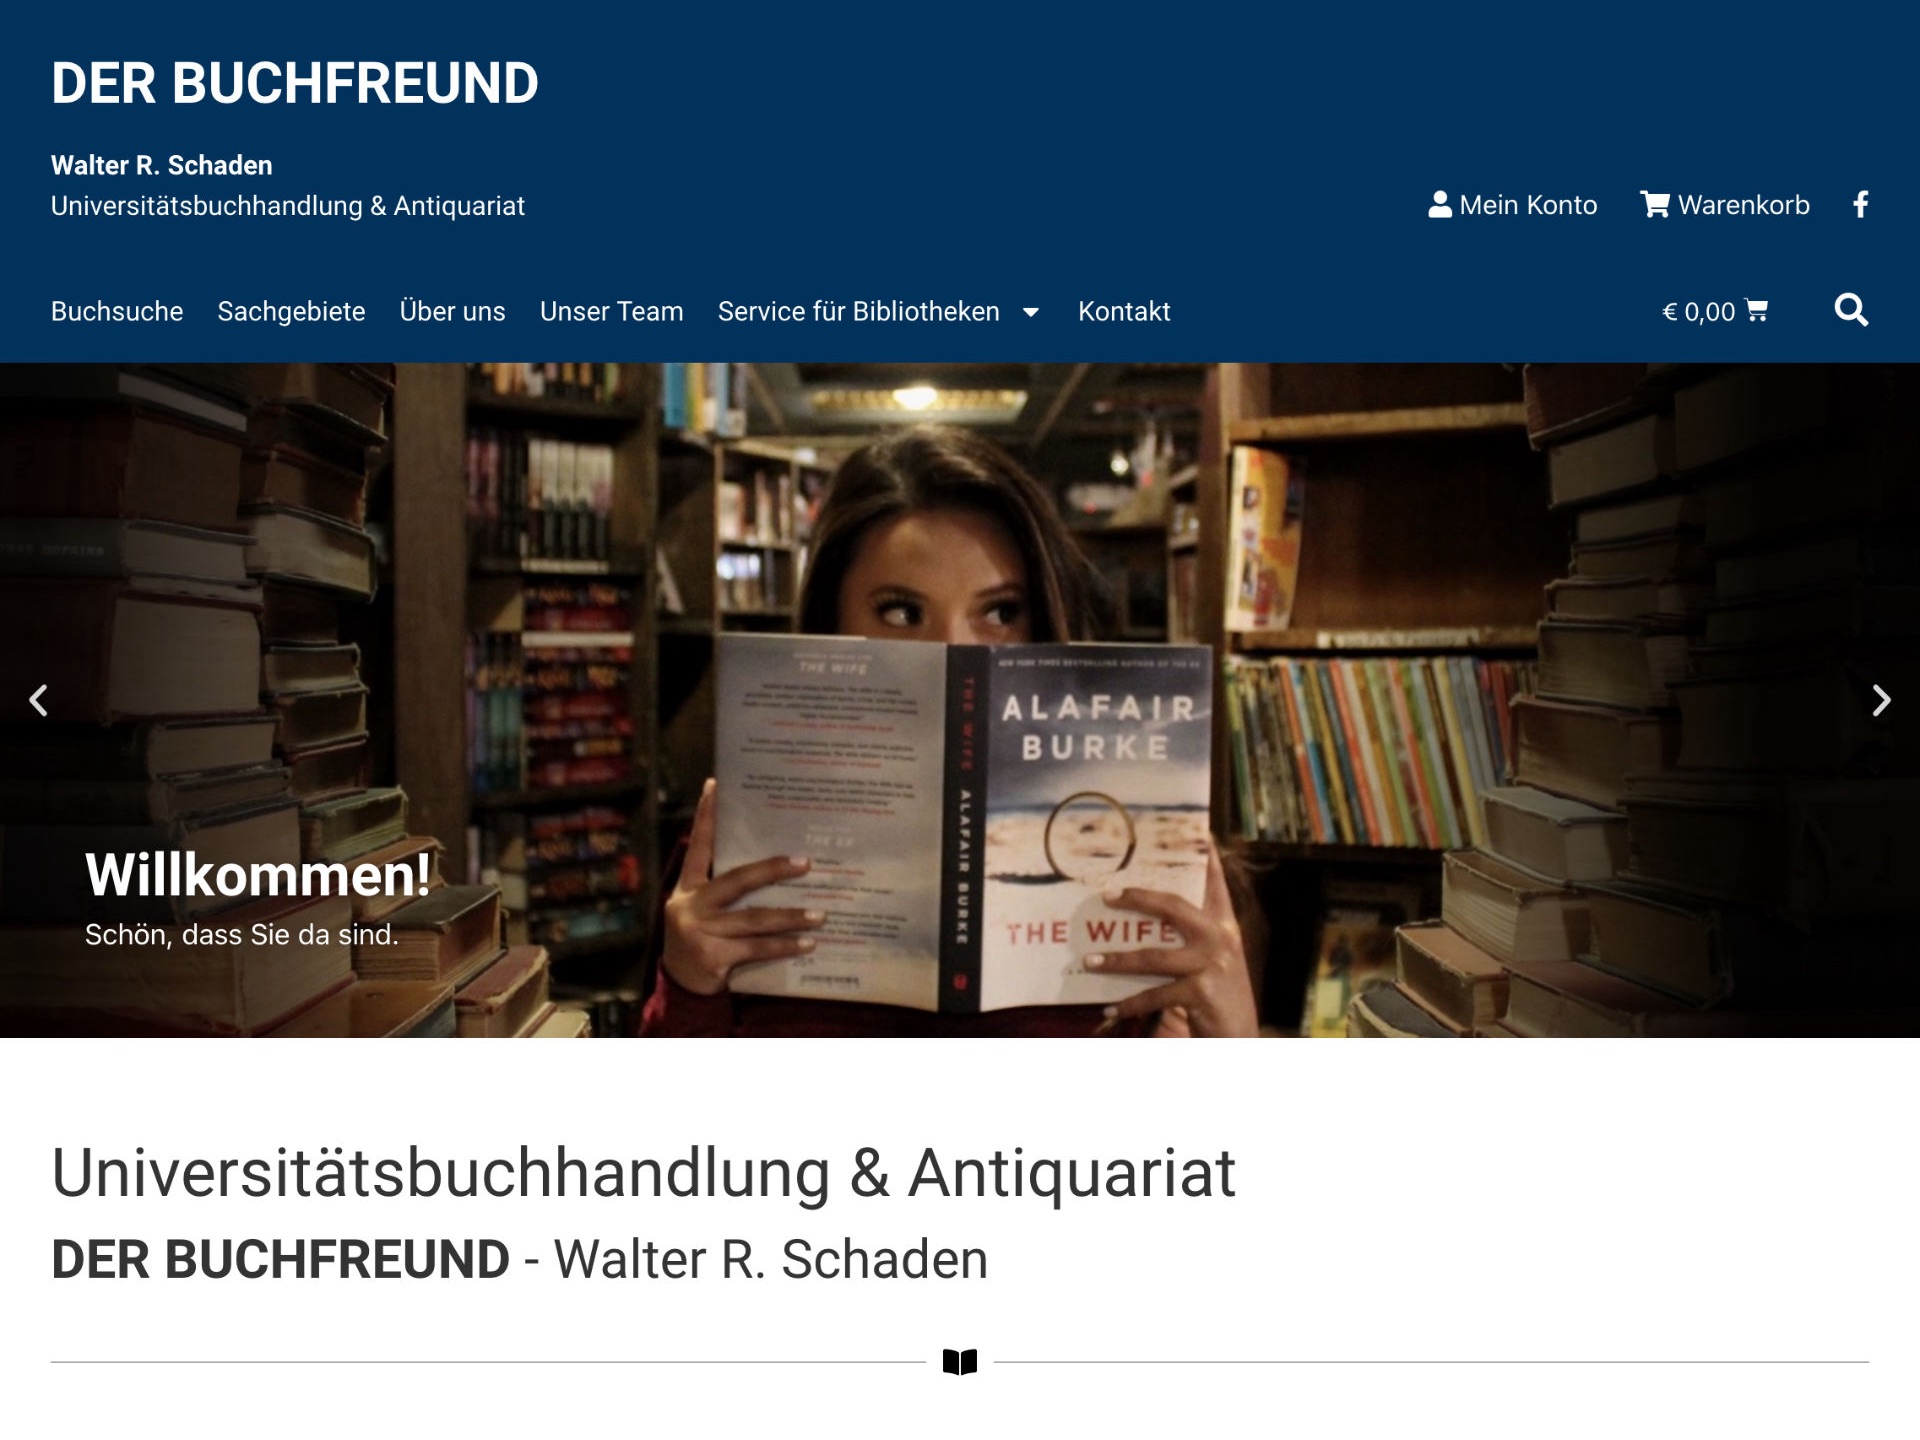 Der Buchfreund - Universitätsbuchhandlung & Antiquariat - Online Shop